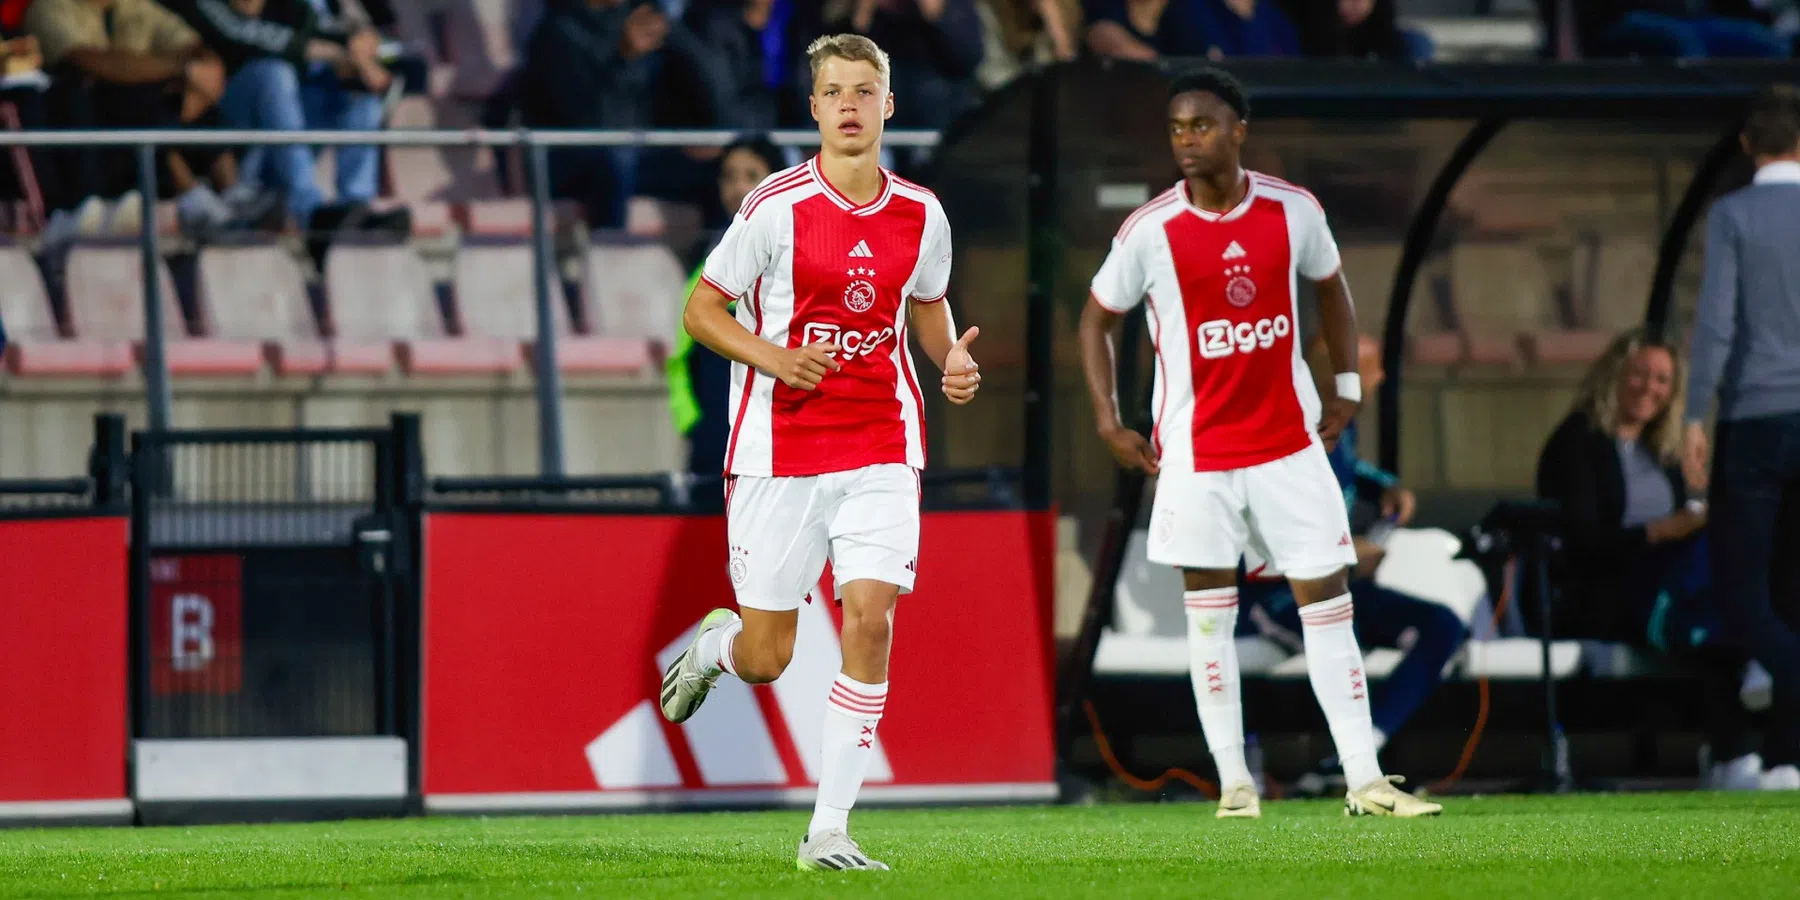 Wie is Sean Steur, het Ajax-talent dat op interesse van PSV kan rekenen?